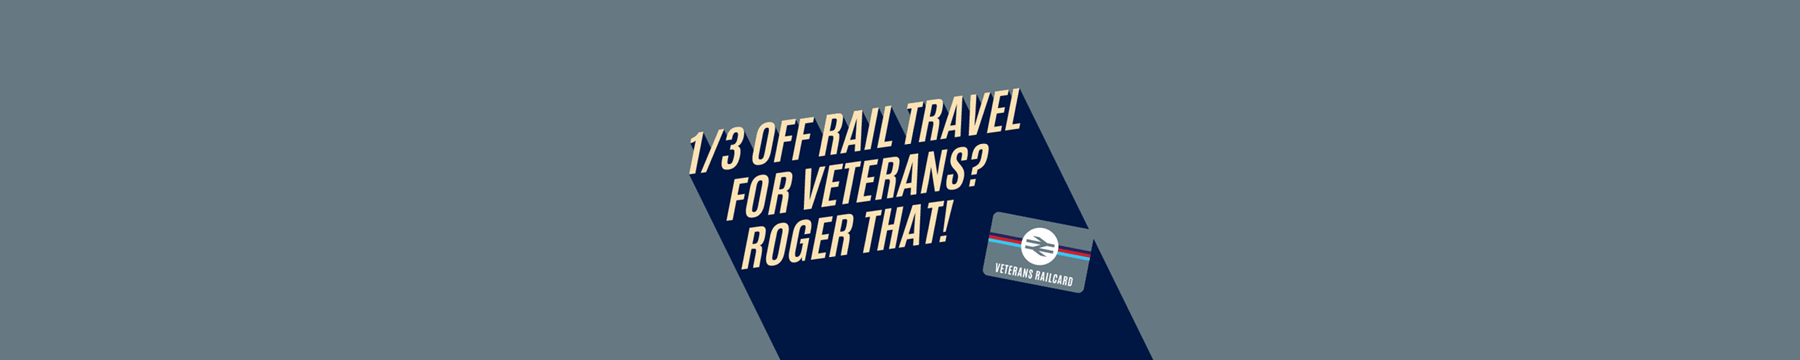 1/3 off for Veterans? Roger that